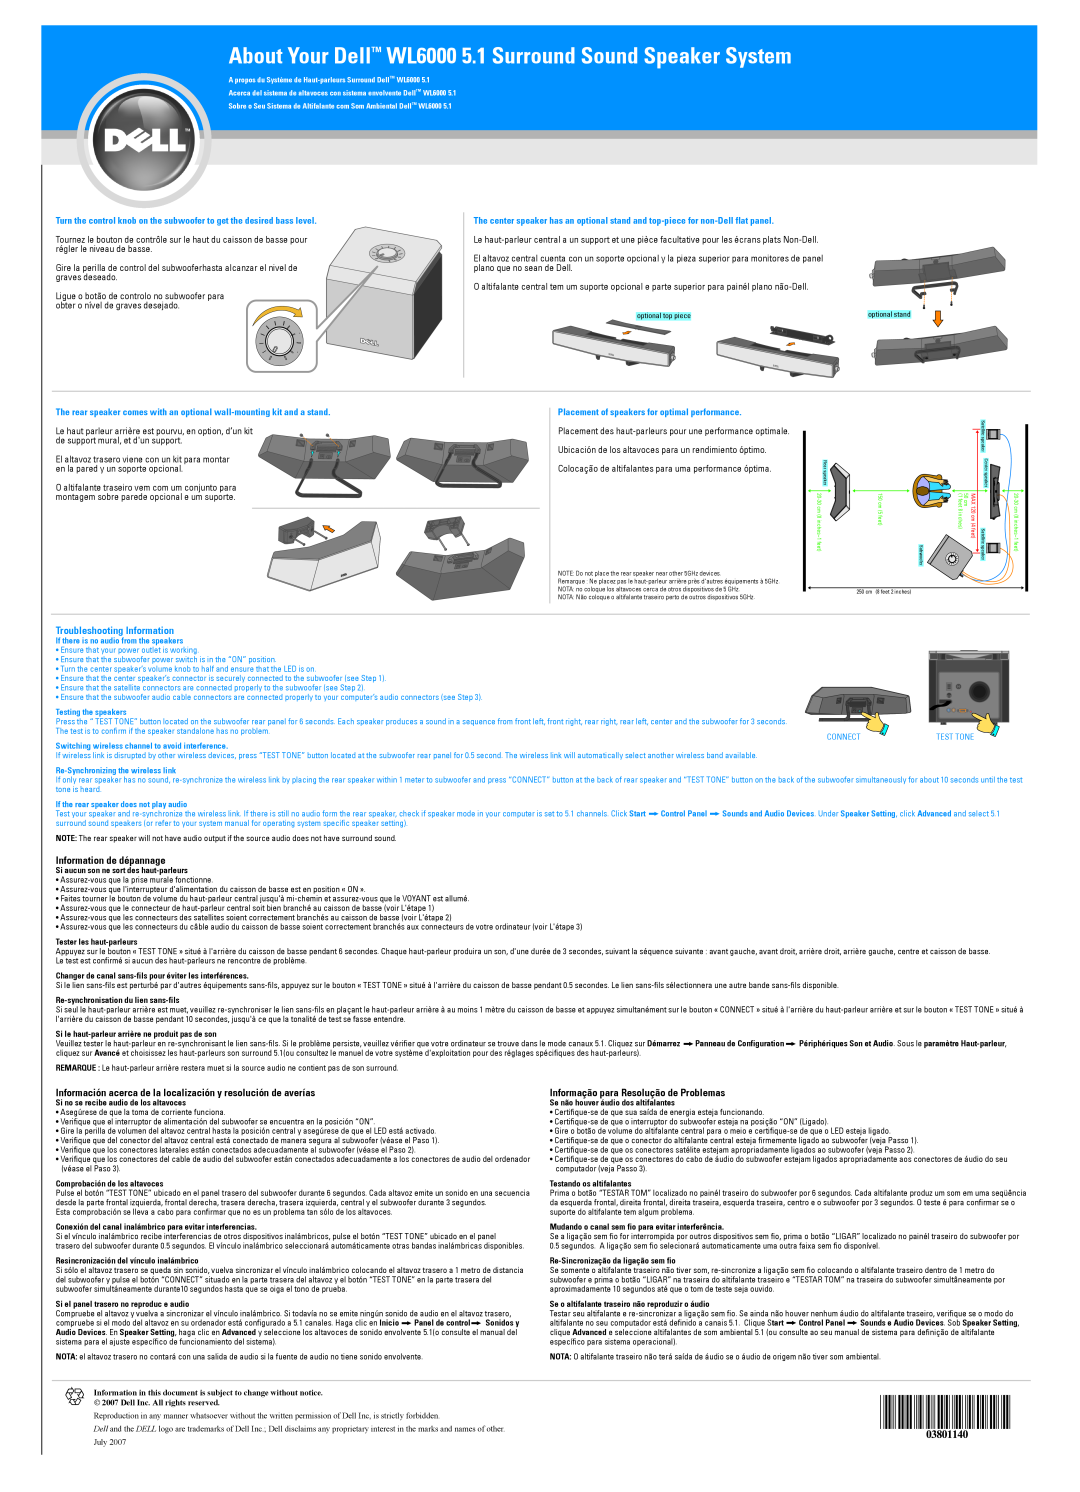 Dell About Your DellTM WL6000 5.1 Surround Sound Speaker System, Troubleshooting Information, Information de dépannage 